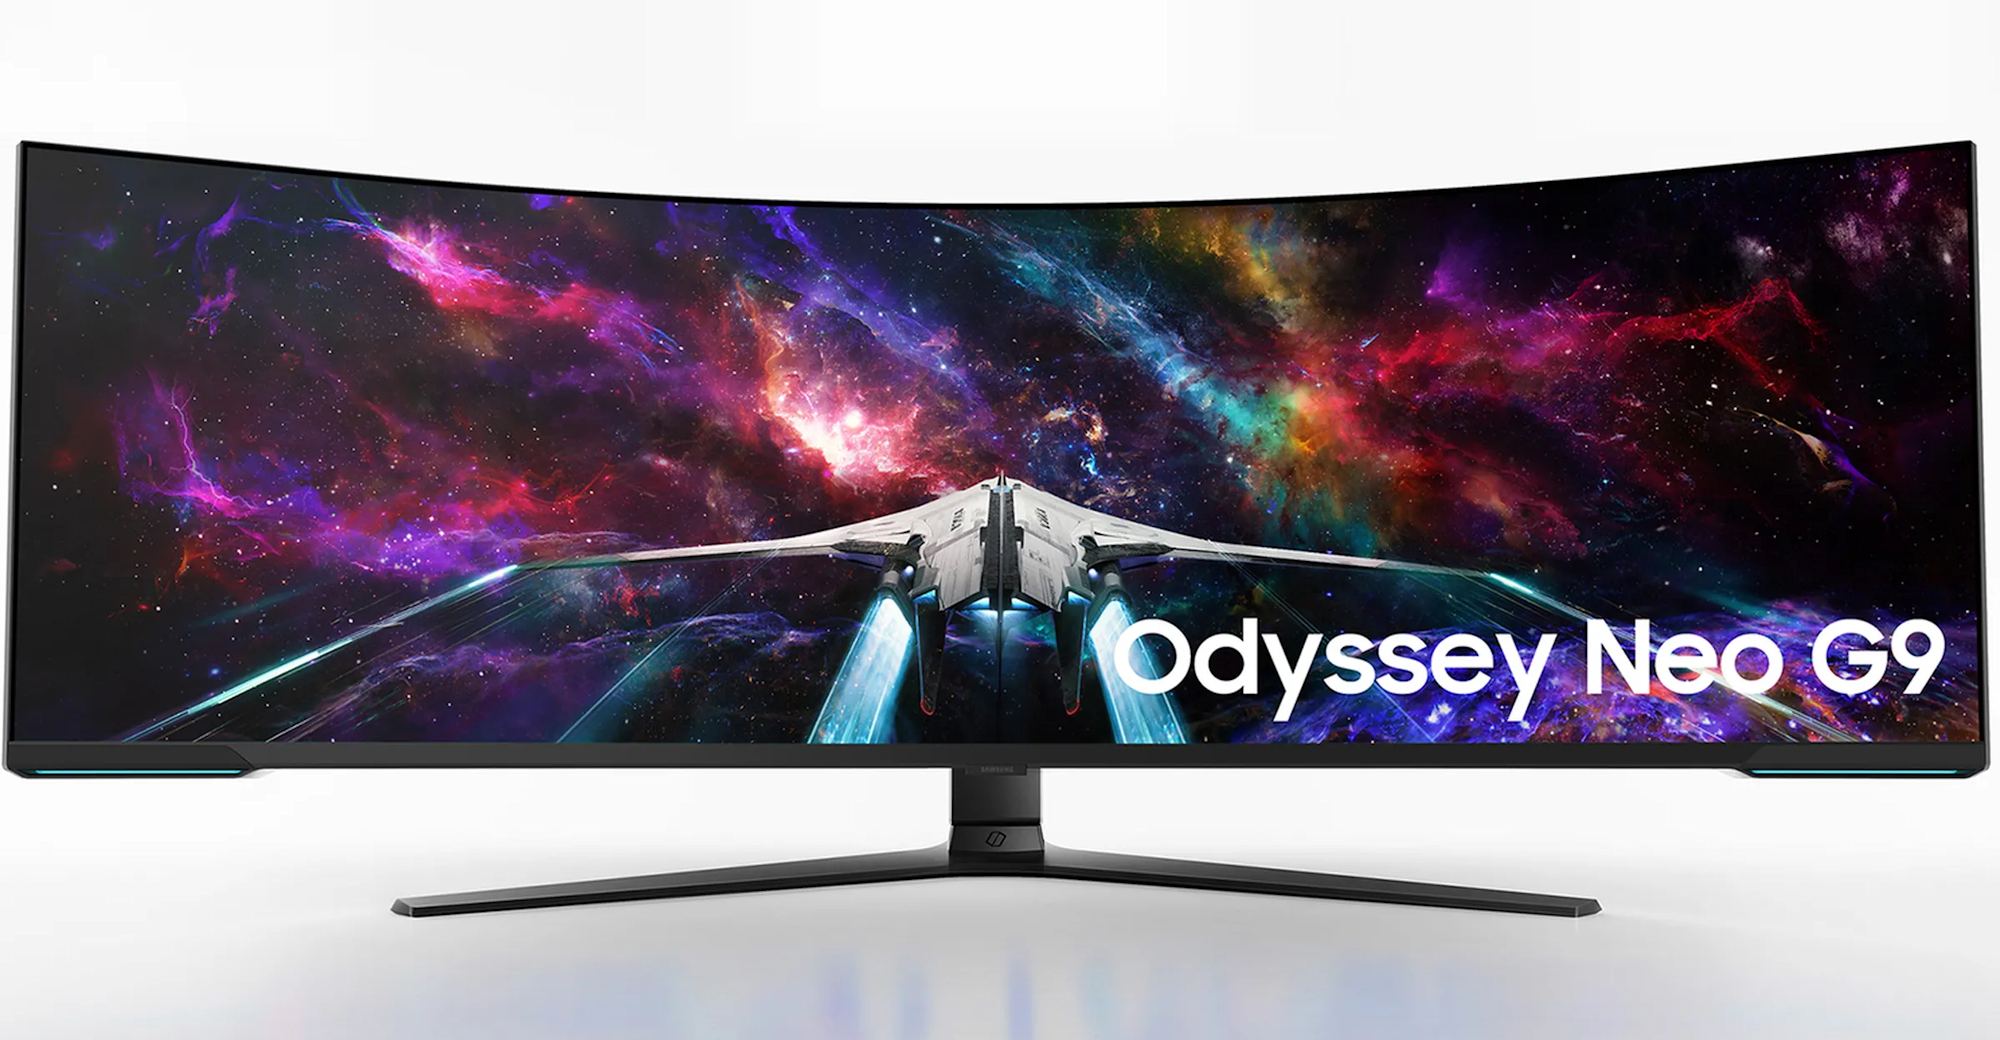 Test Samsung Odyssey Oled G9 49” : le meilleur écran ultrawide du marché ?  - Les Numériques